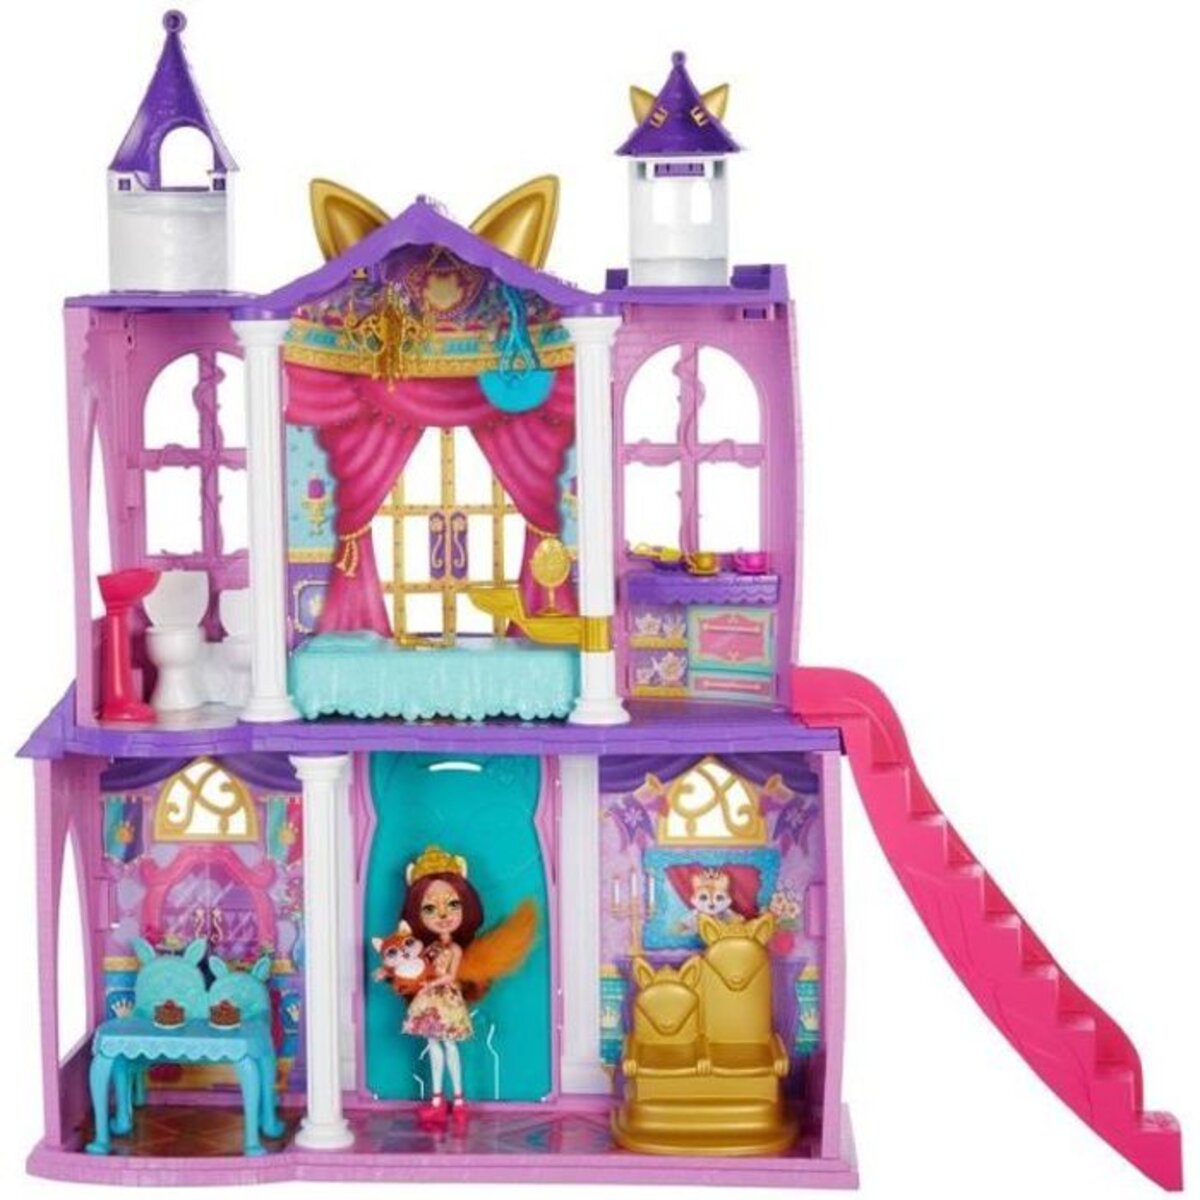 Enchantimals - château royal enchantimals 66 cm avec poupée renard figurine  et 19 éléments de jeu - maison mini-poupée - des 4 ans - La Poste